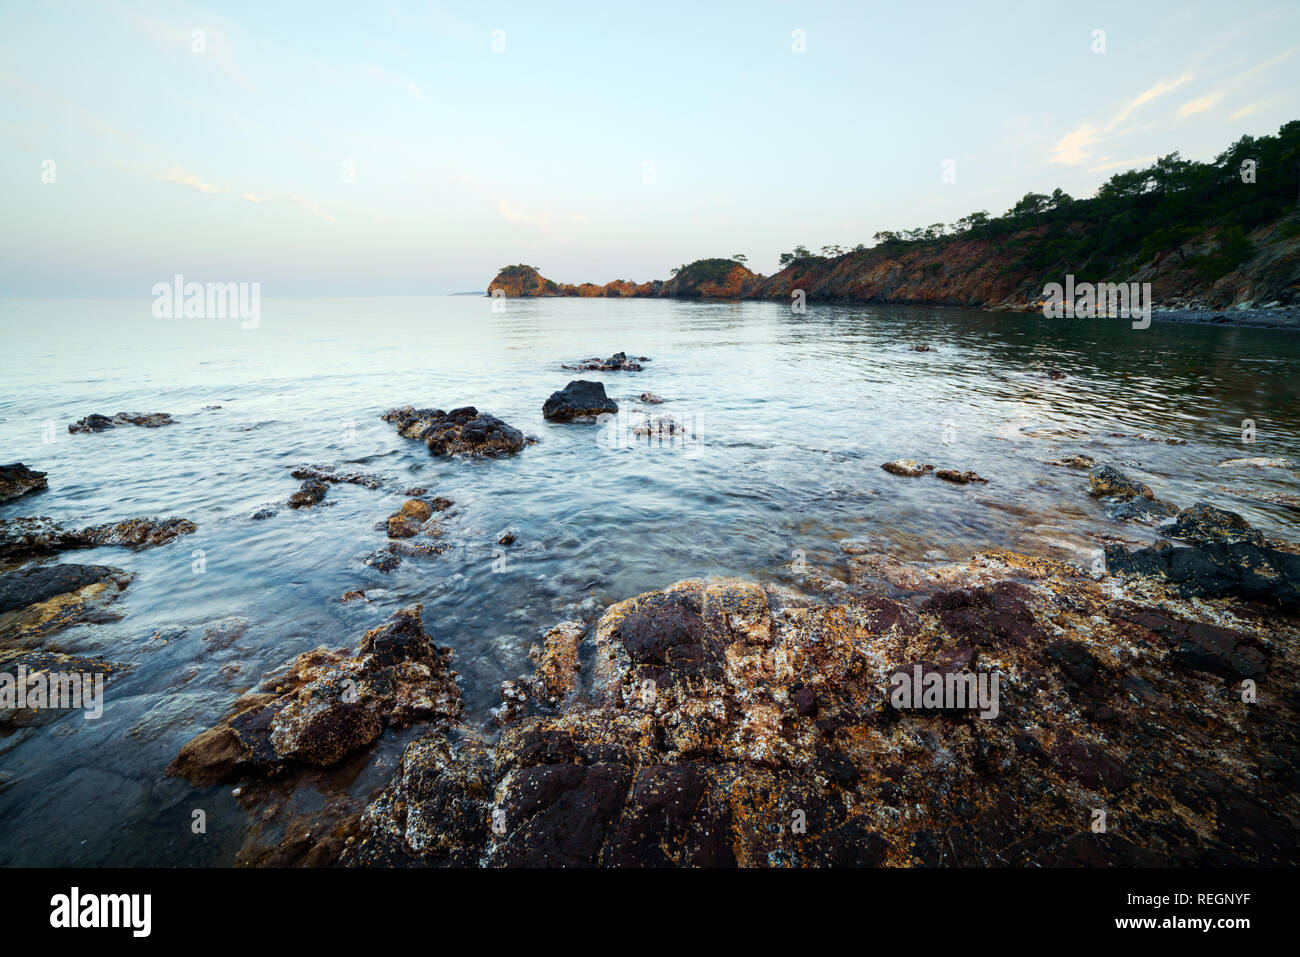 Erstaunlich mediterranen Seenlandschaft in der Türkei. Landschaftsfotografie Stockfoto